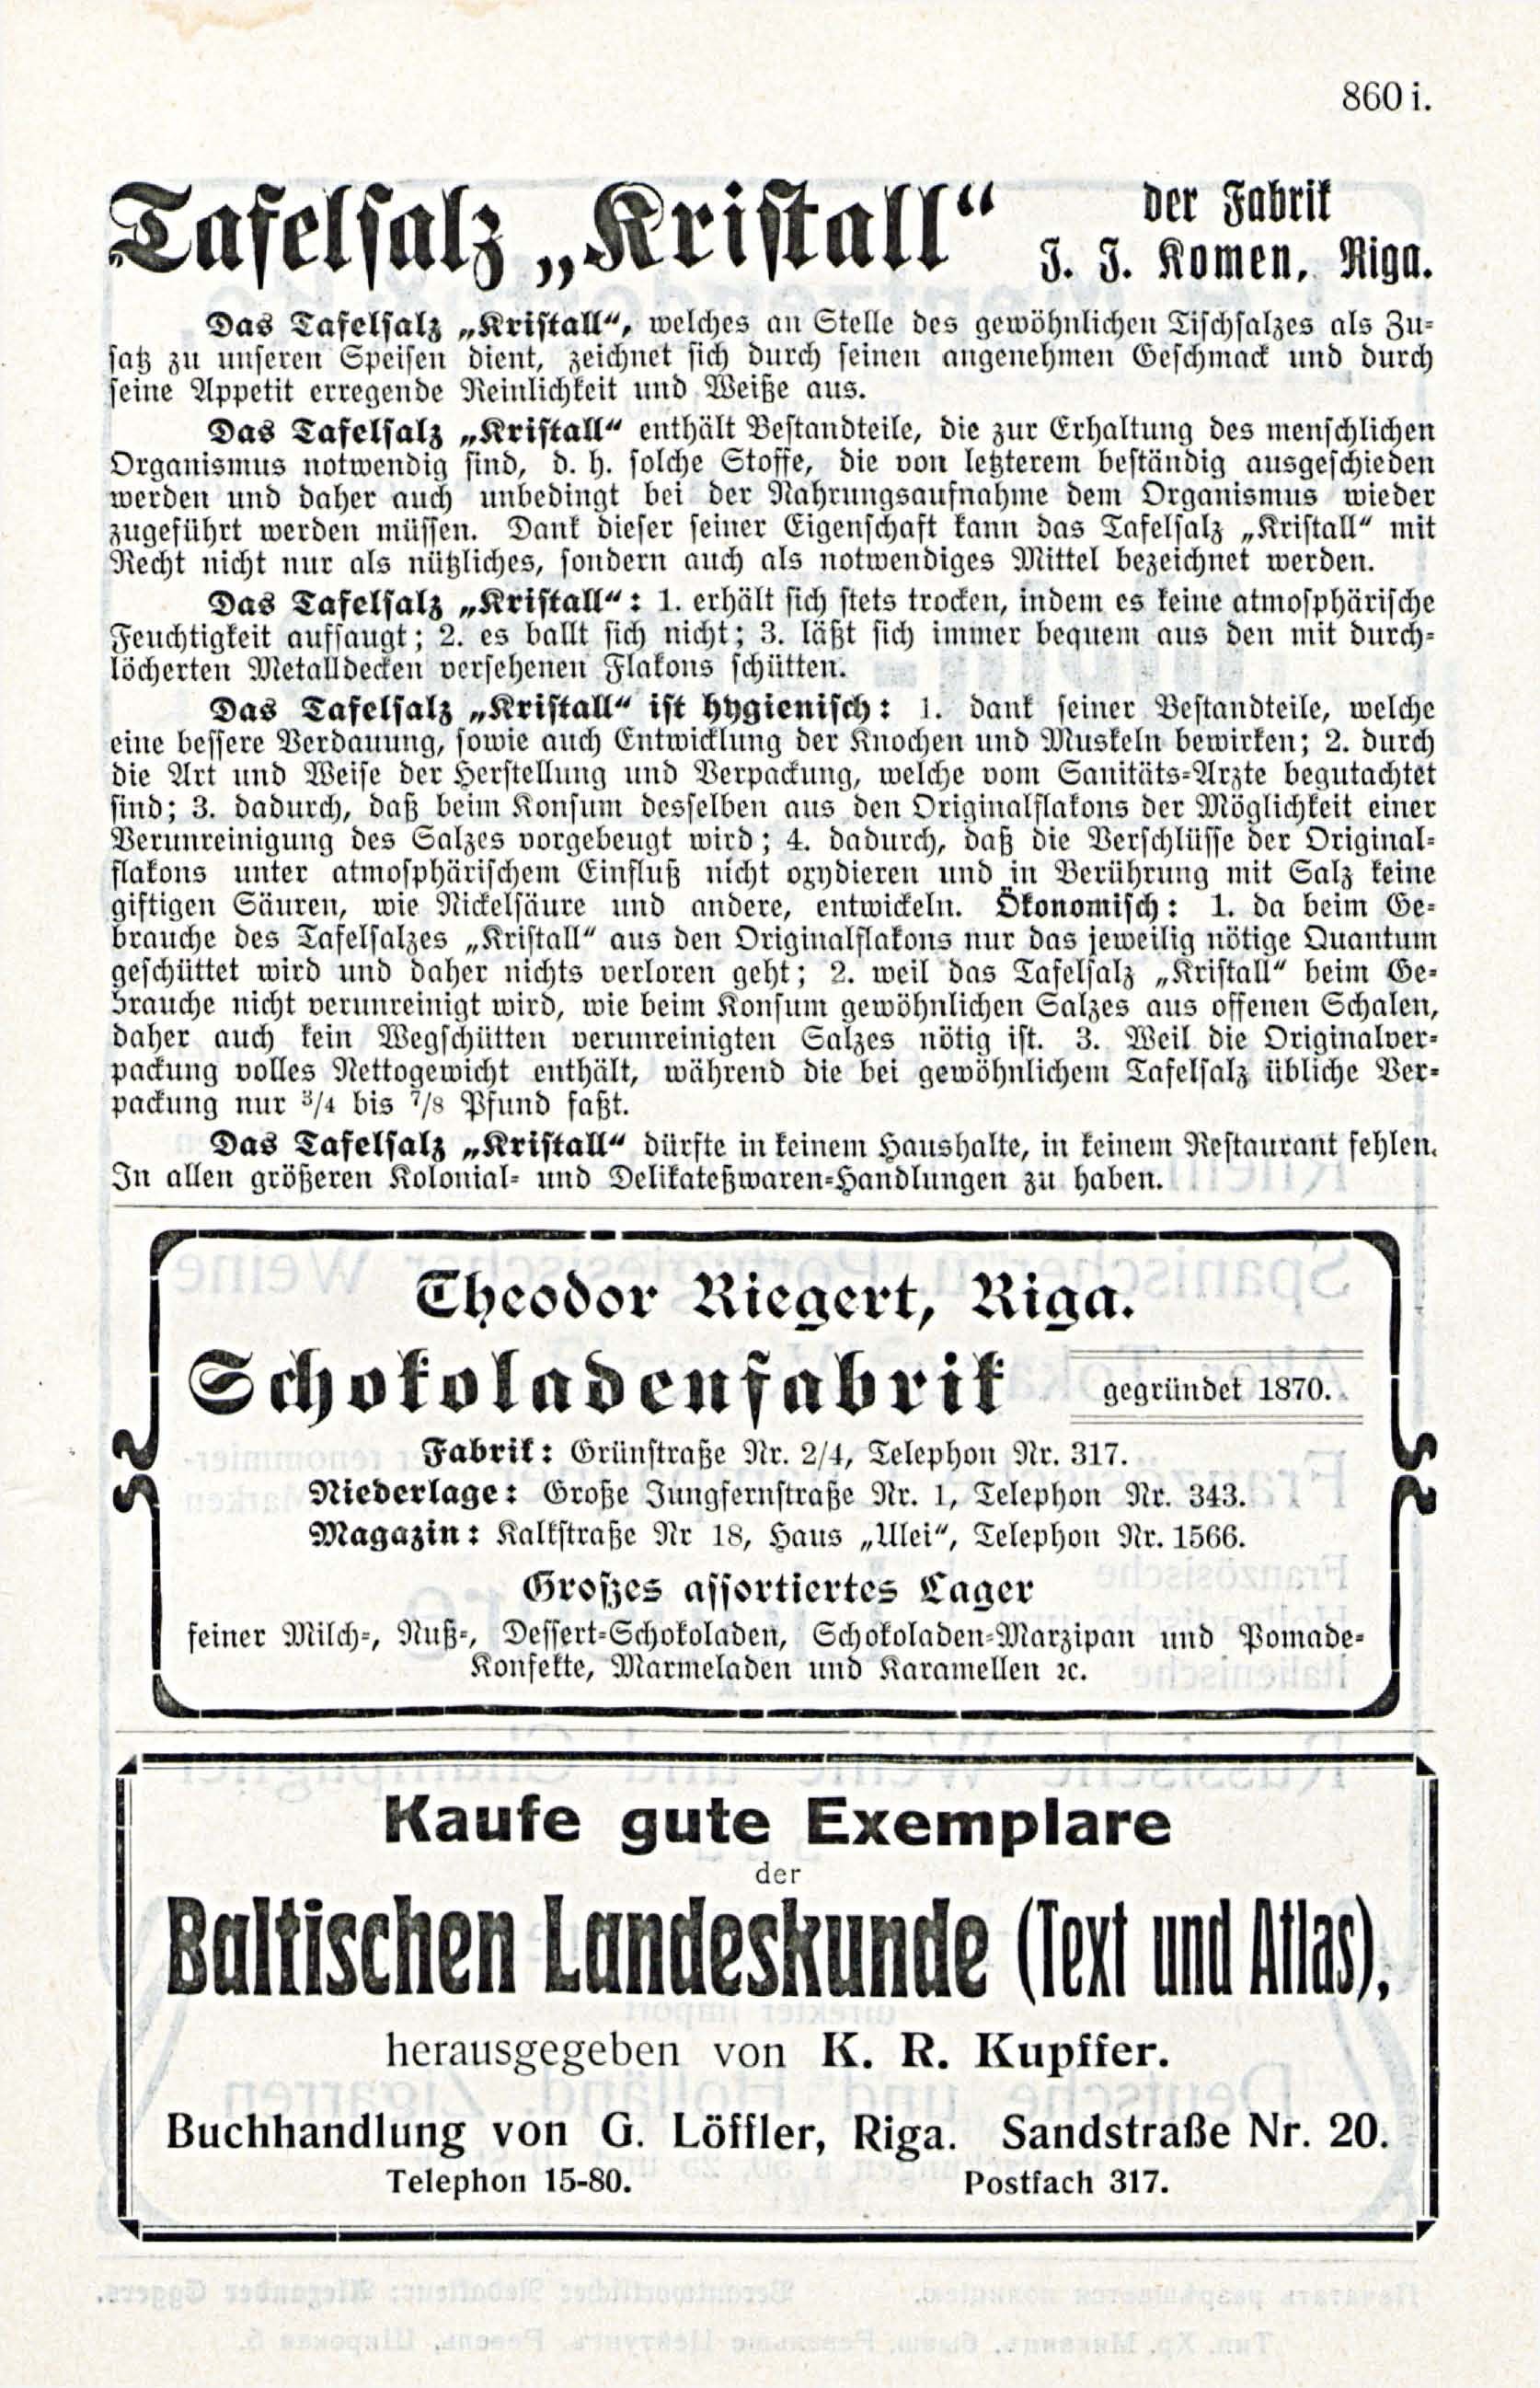 Deutsche Monatsschrift für Russland [3/12] (1914) | 83. (867) Main body of text